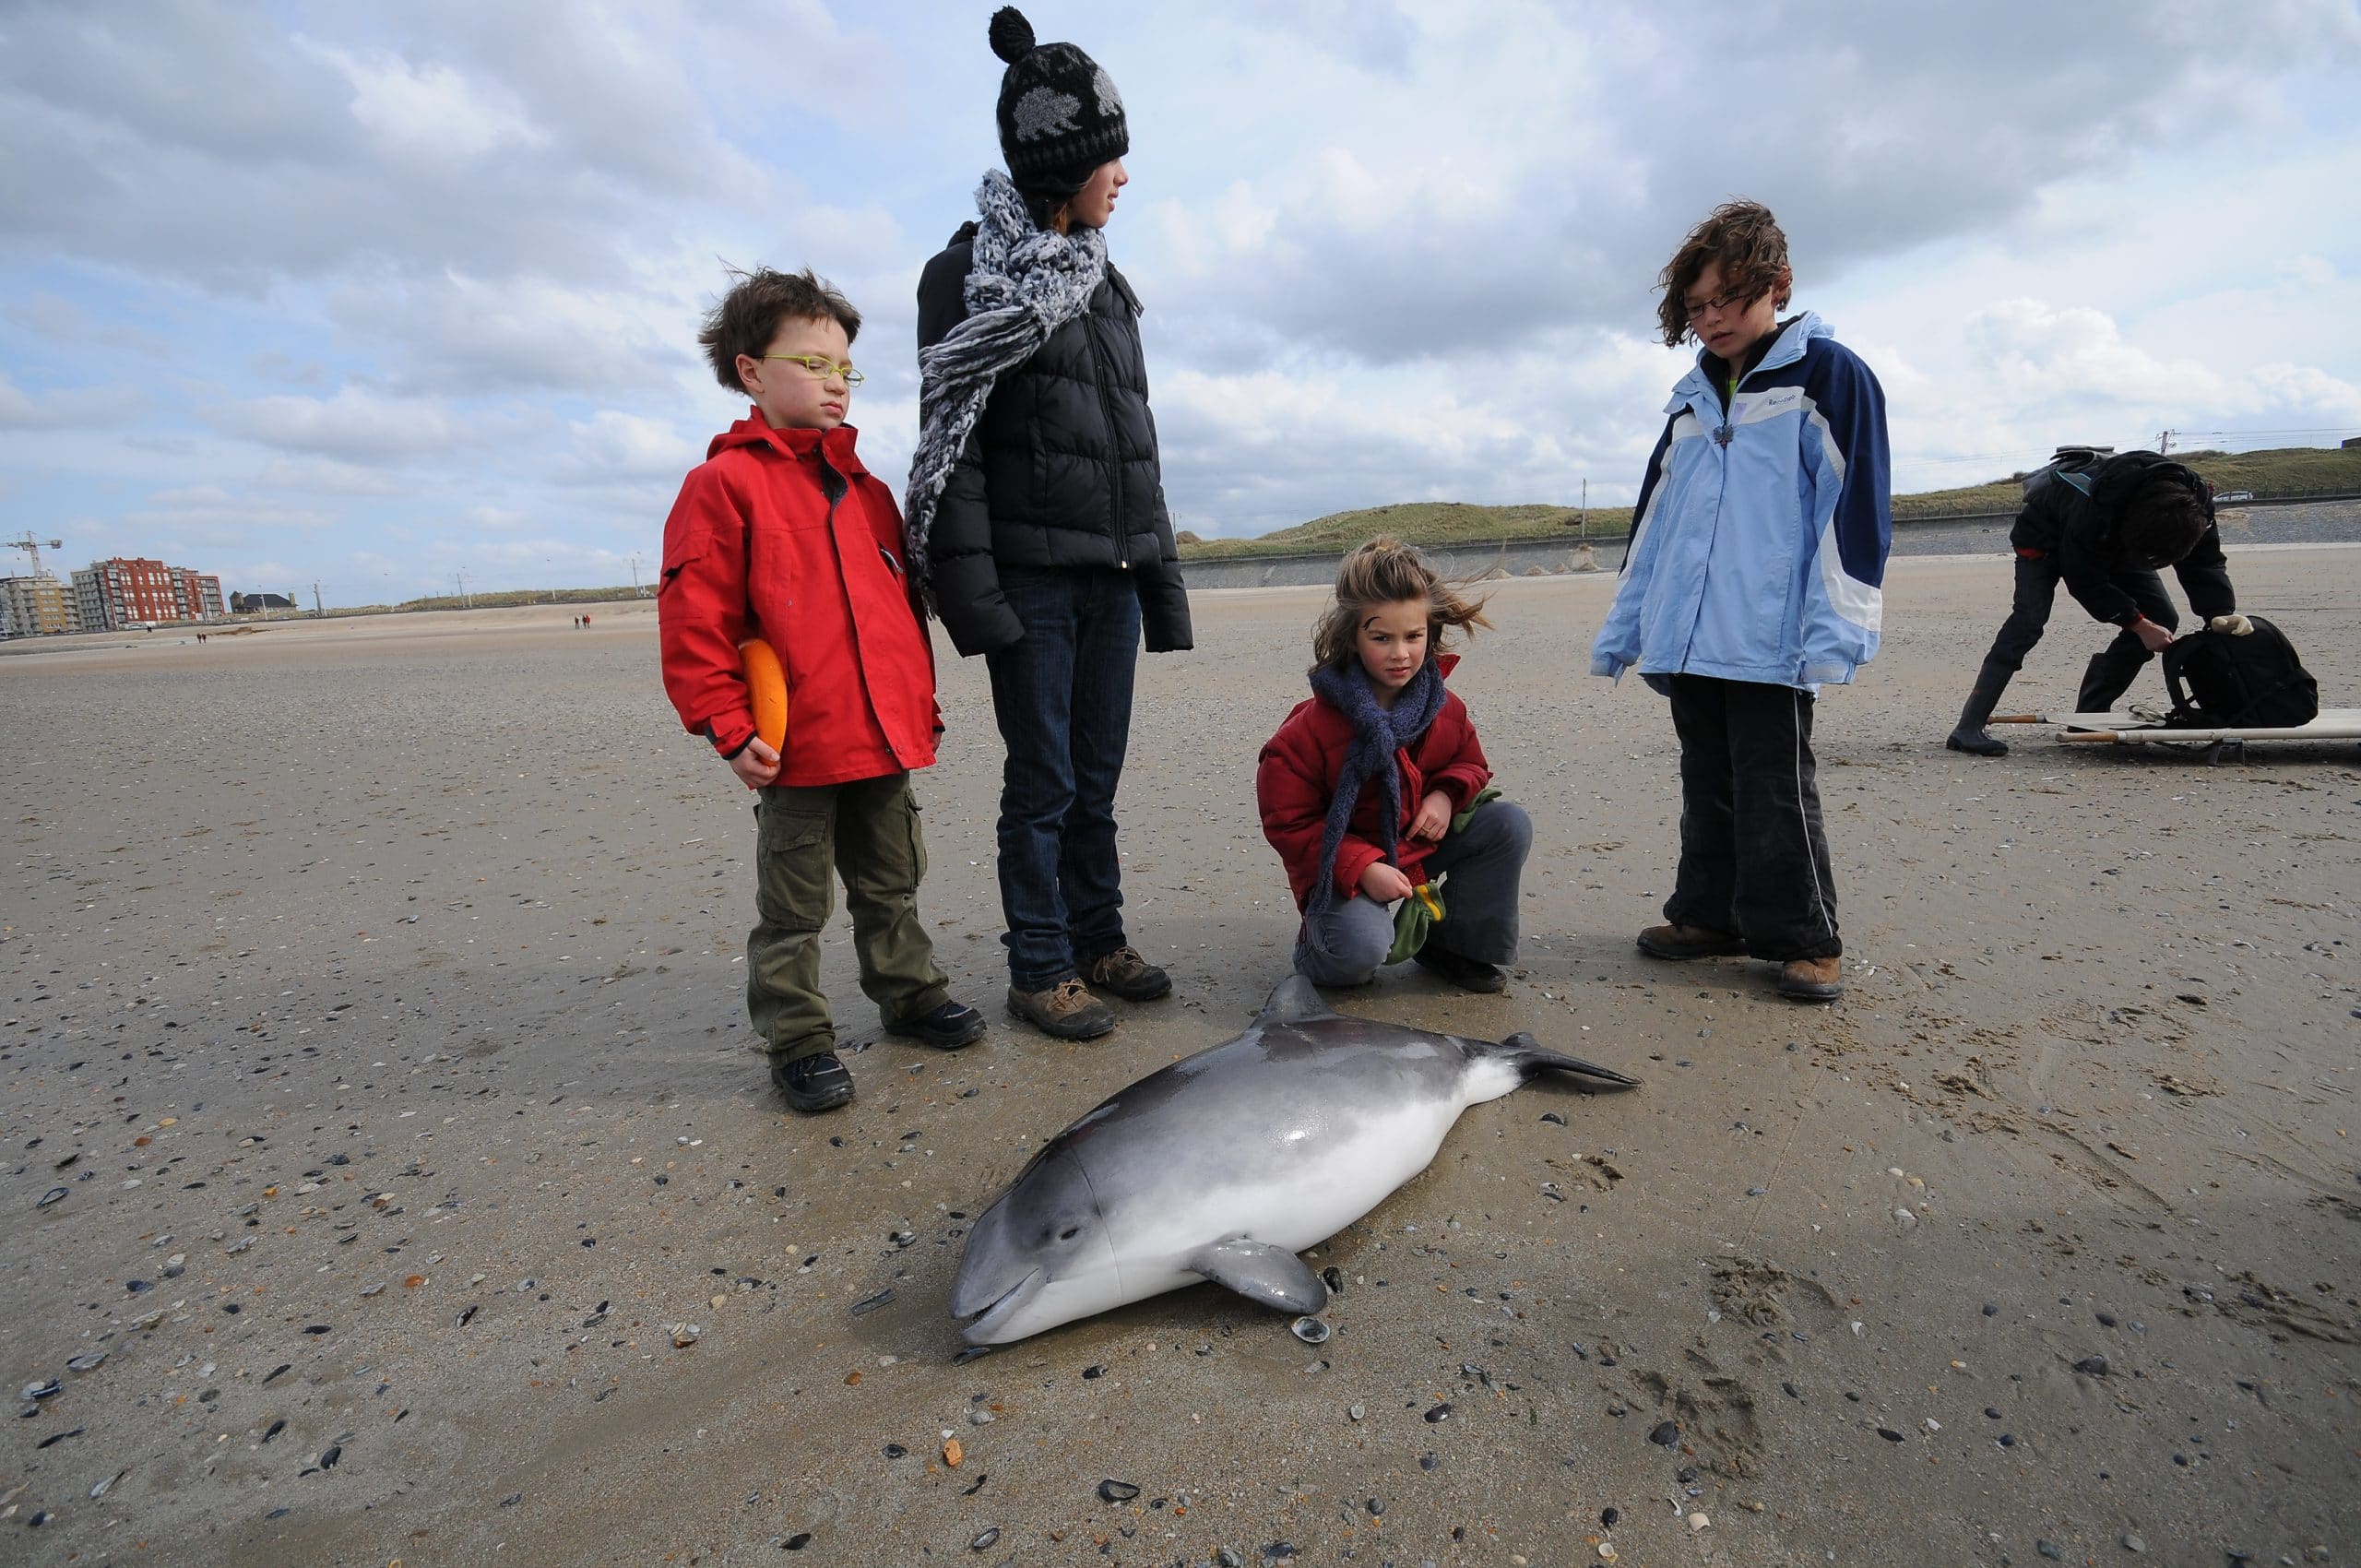 Kinder betrauern einen toten Schweinswal am Strand. Am Kopf sind Netzmarken zu sehen, die darauf hinweisen, dass der Wal in einem Fischernetz starb. (C) Jan Haelters